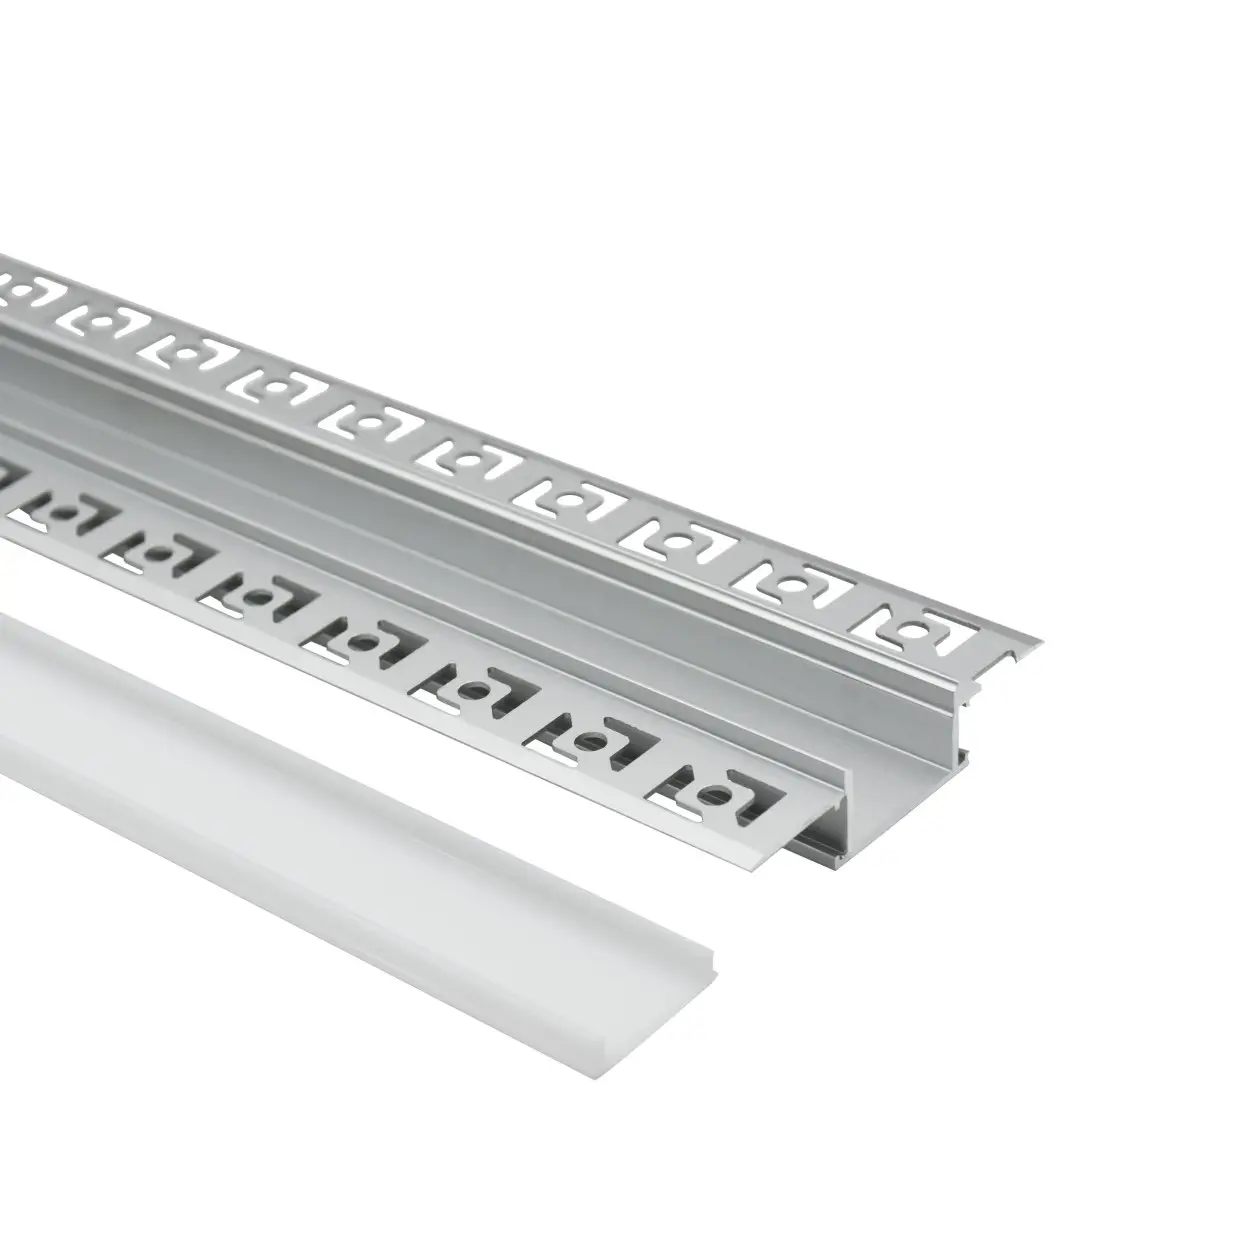 Profilo in alluminio a led per strisce led strisce luminose a led con profili in alluminio estruso prof per ufficio e parete.